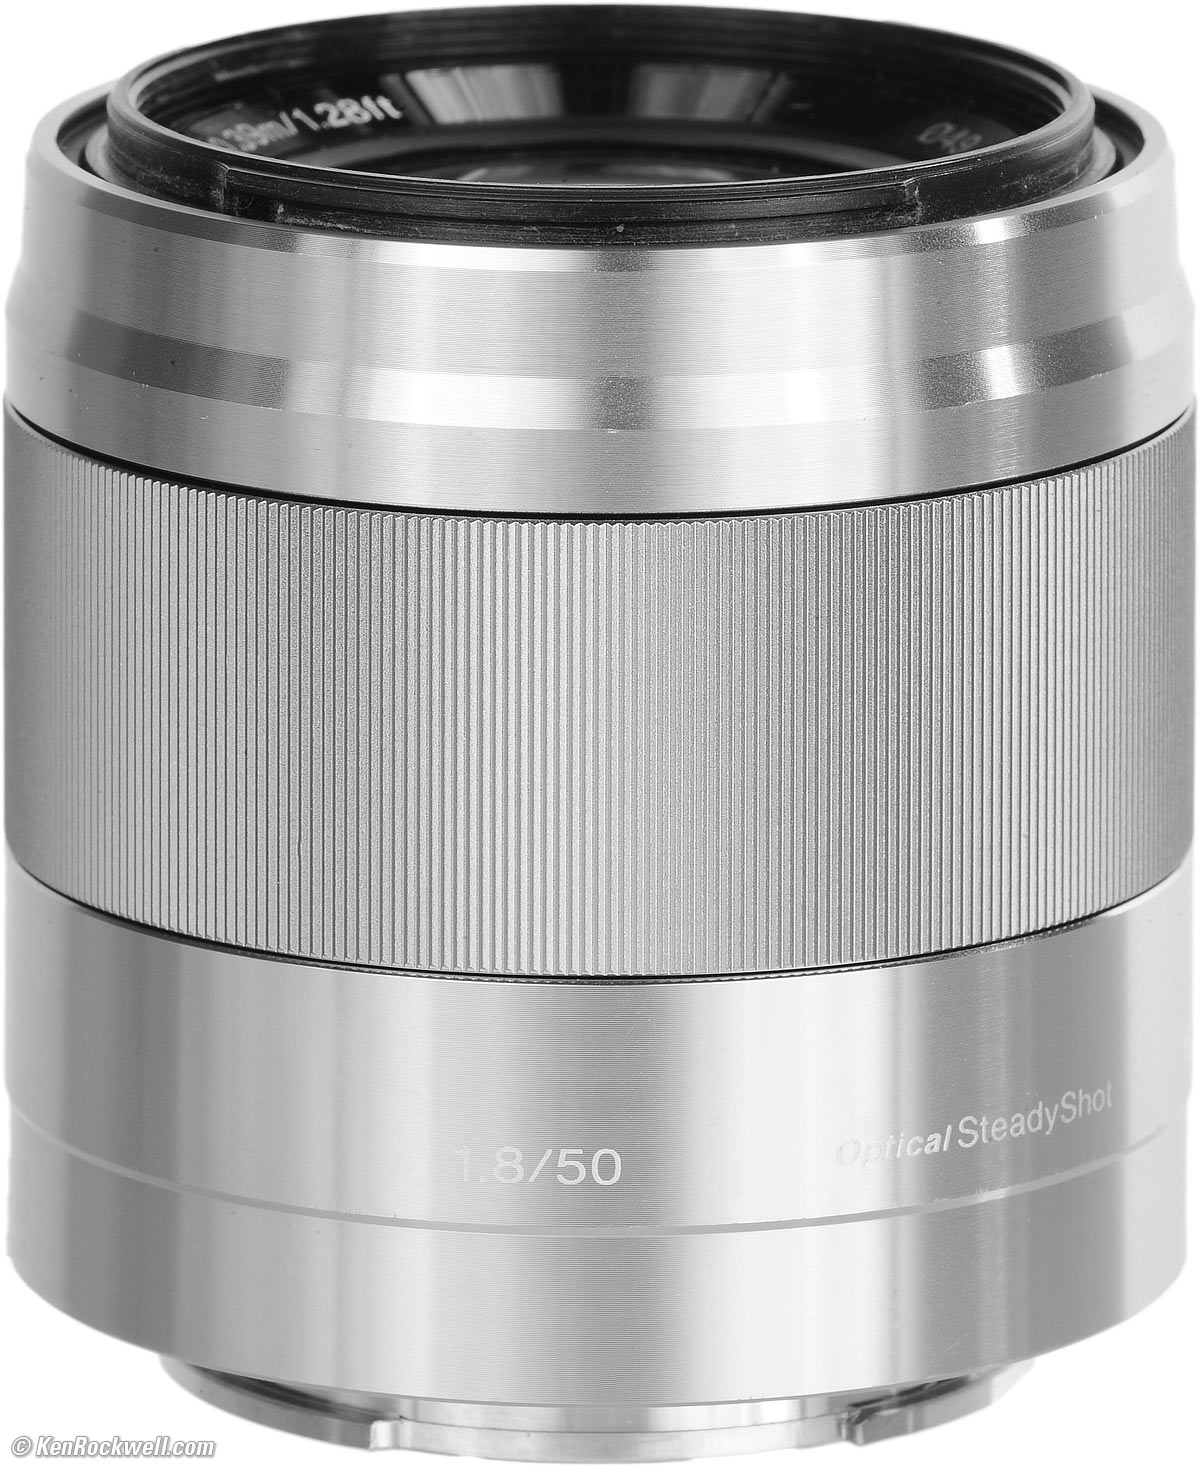  Sony - E 50mm F1.8 OSS Portrait Lens (SEL50F18/B), Black : E  Mount Lenses : Electronics